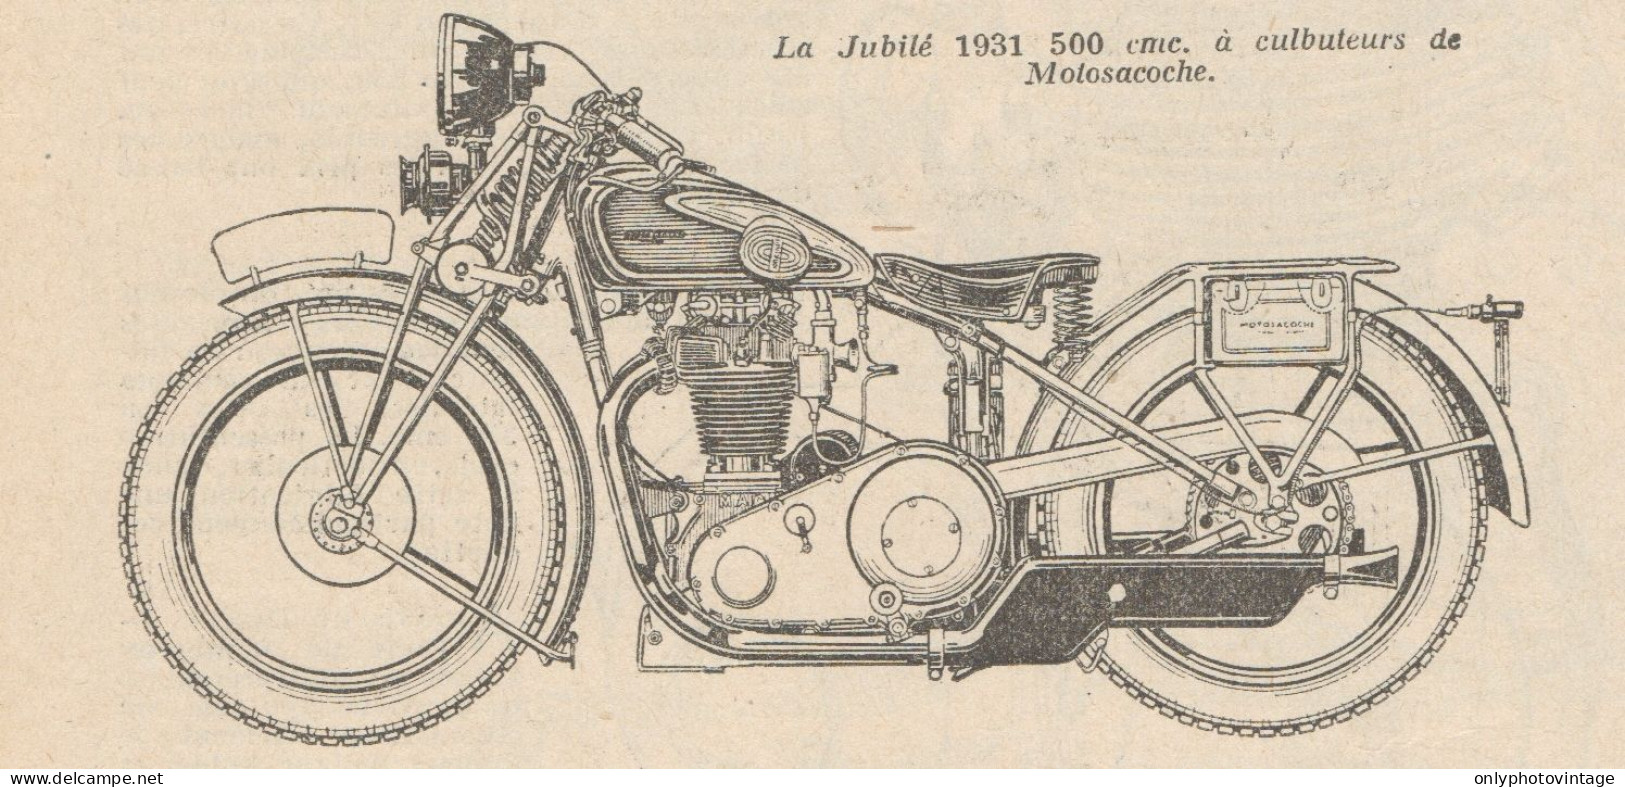 Motocyclette Jubilé 500 Cmc. - Pubblicità D'epoca - 1930 Old Advertising - Publicités